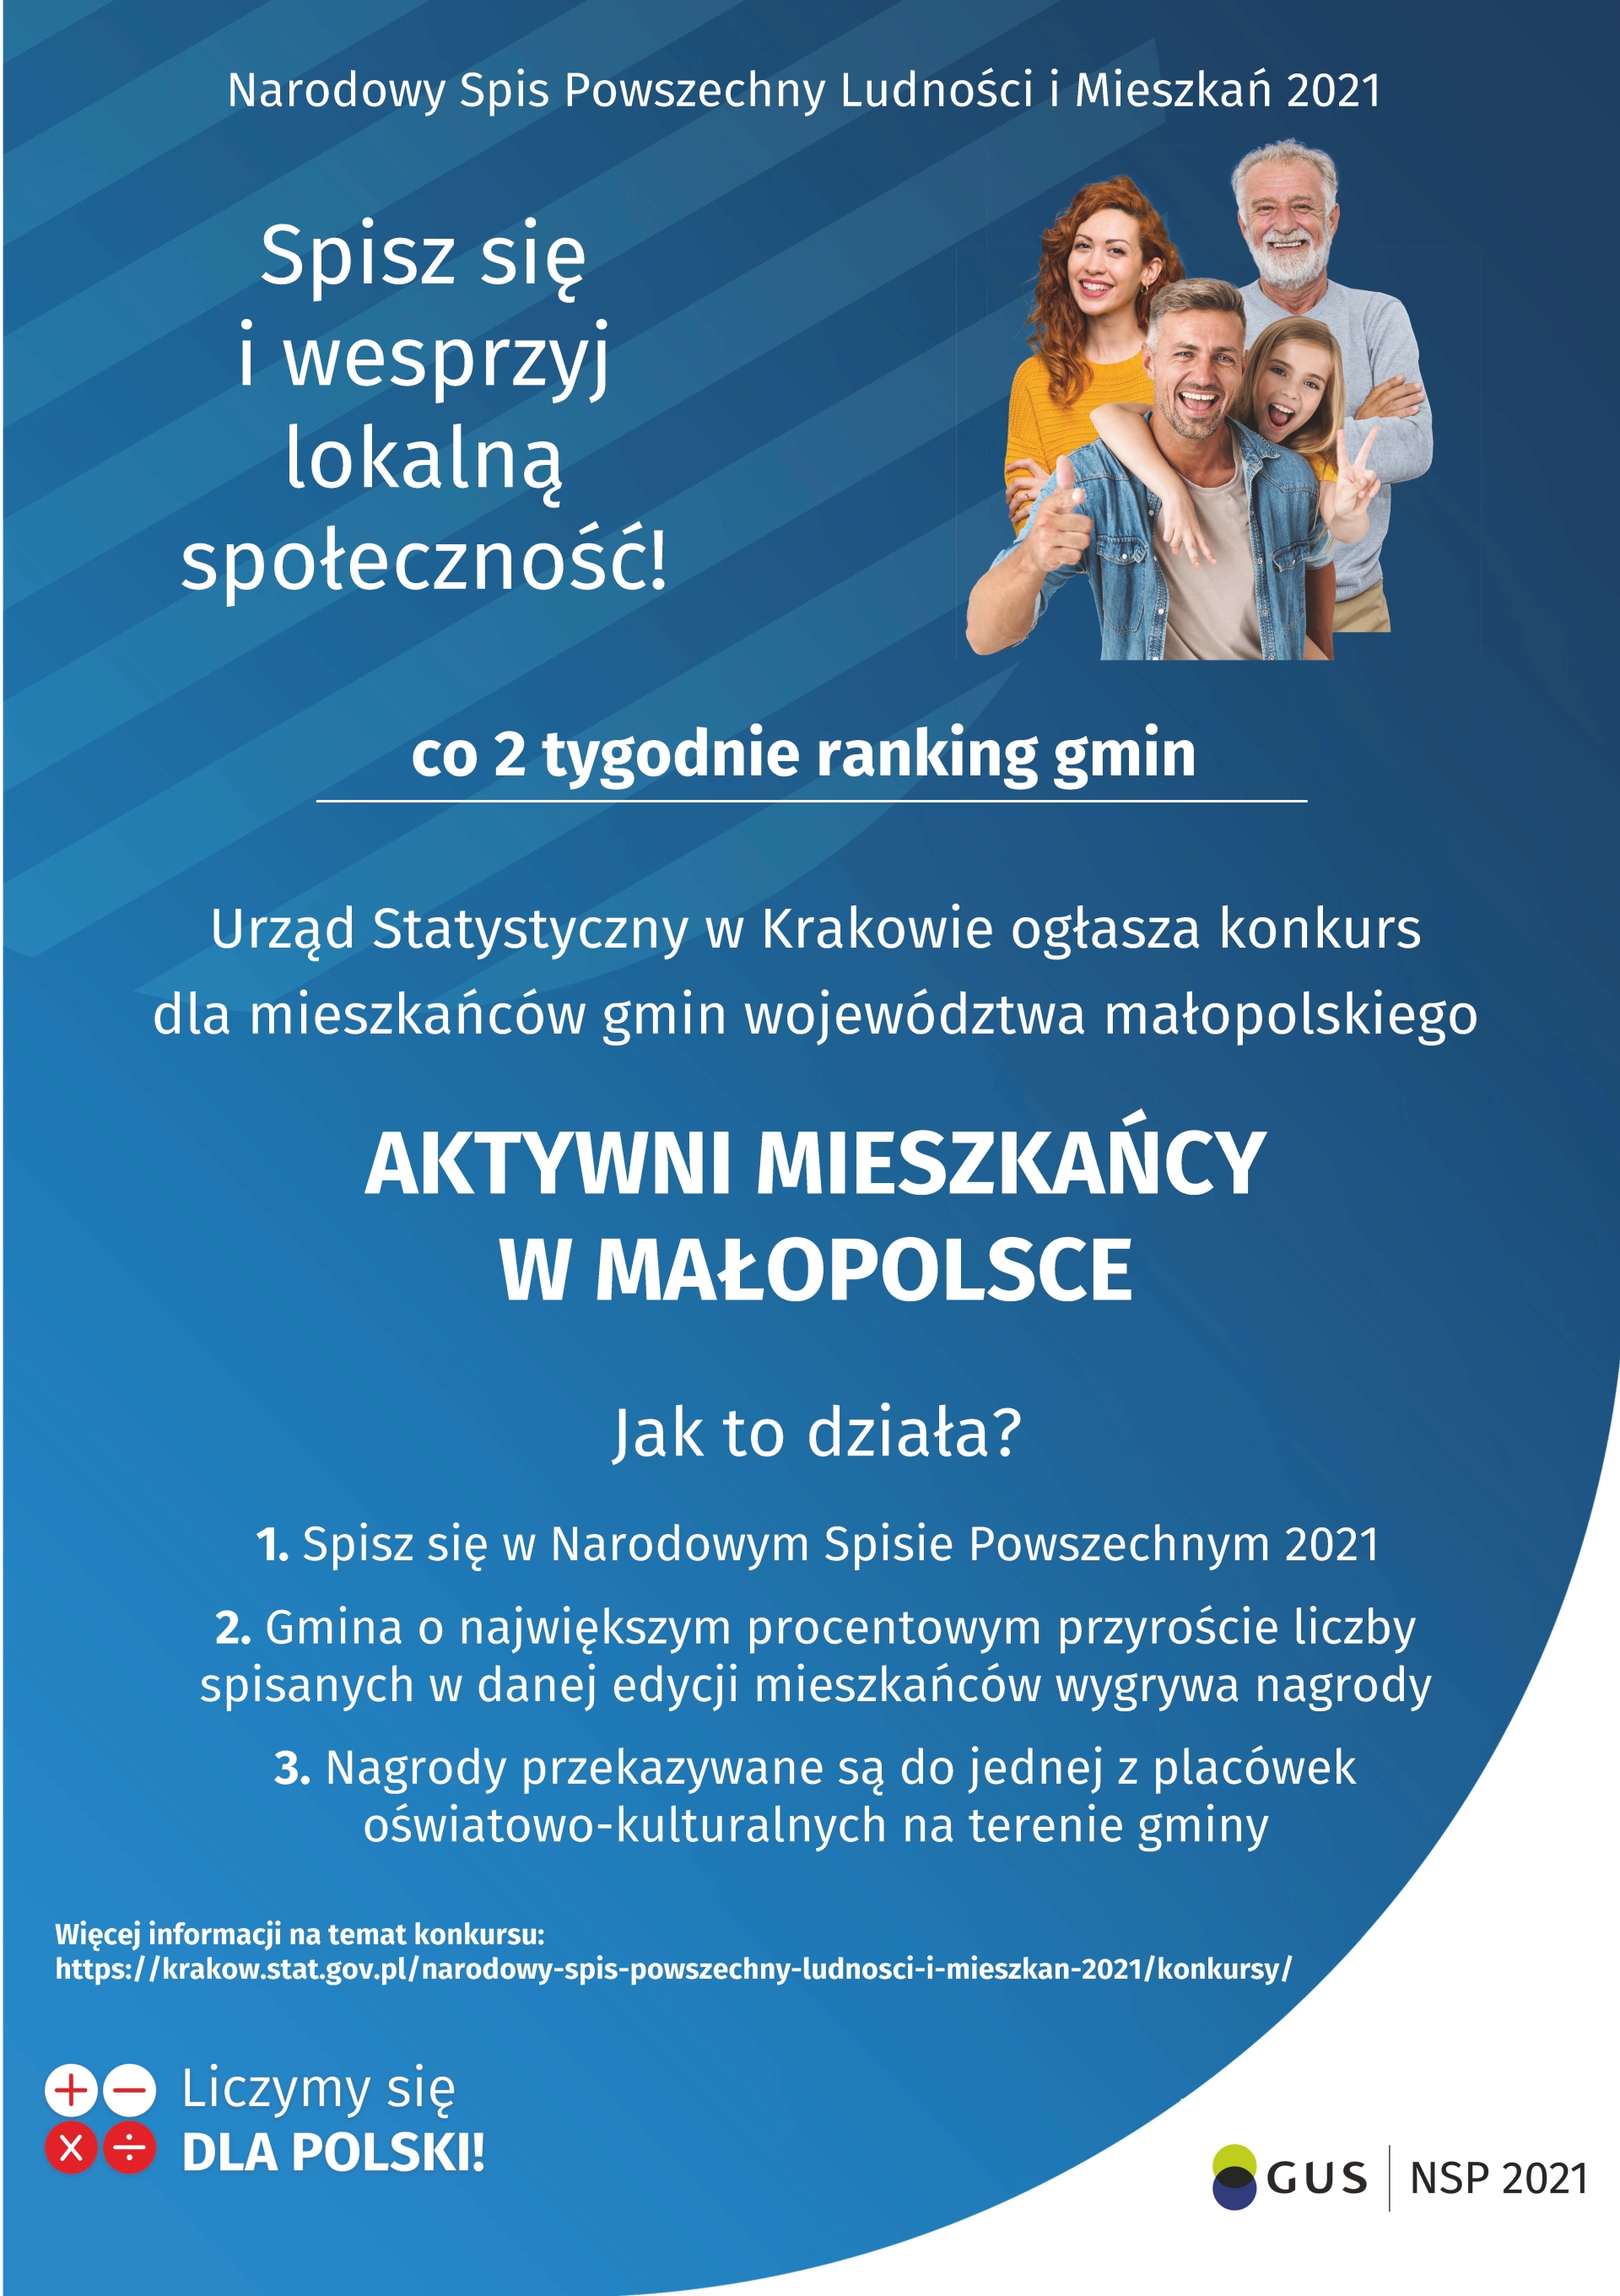 plakat konkusru "Aktywni mieszkańcy w Małopolsce" - przedstawia grupę osób oraz zasady konkursu